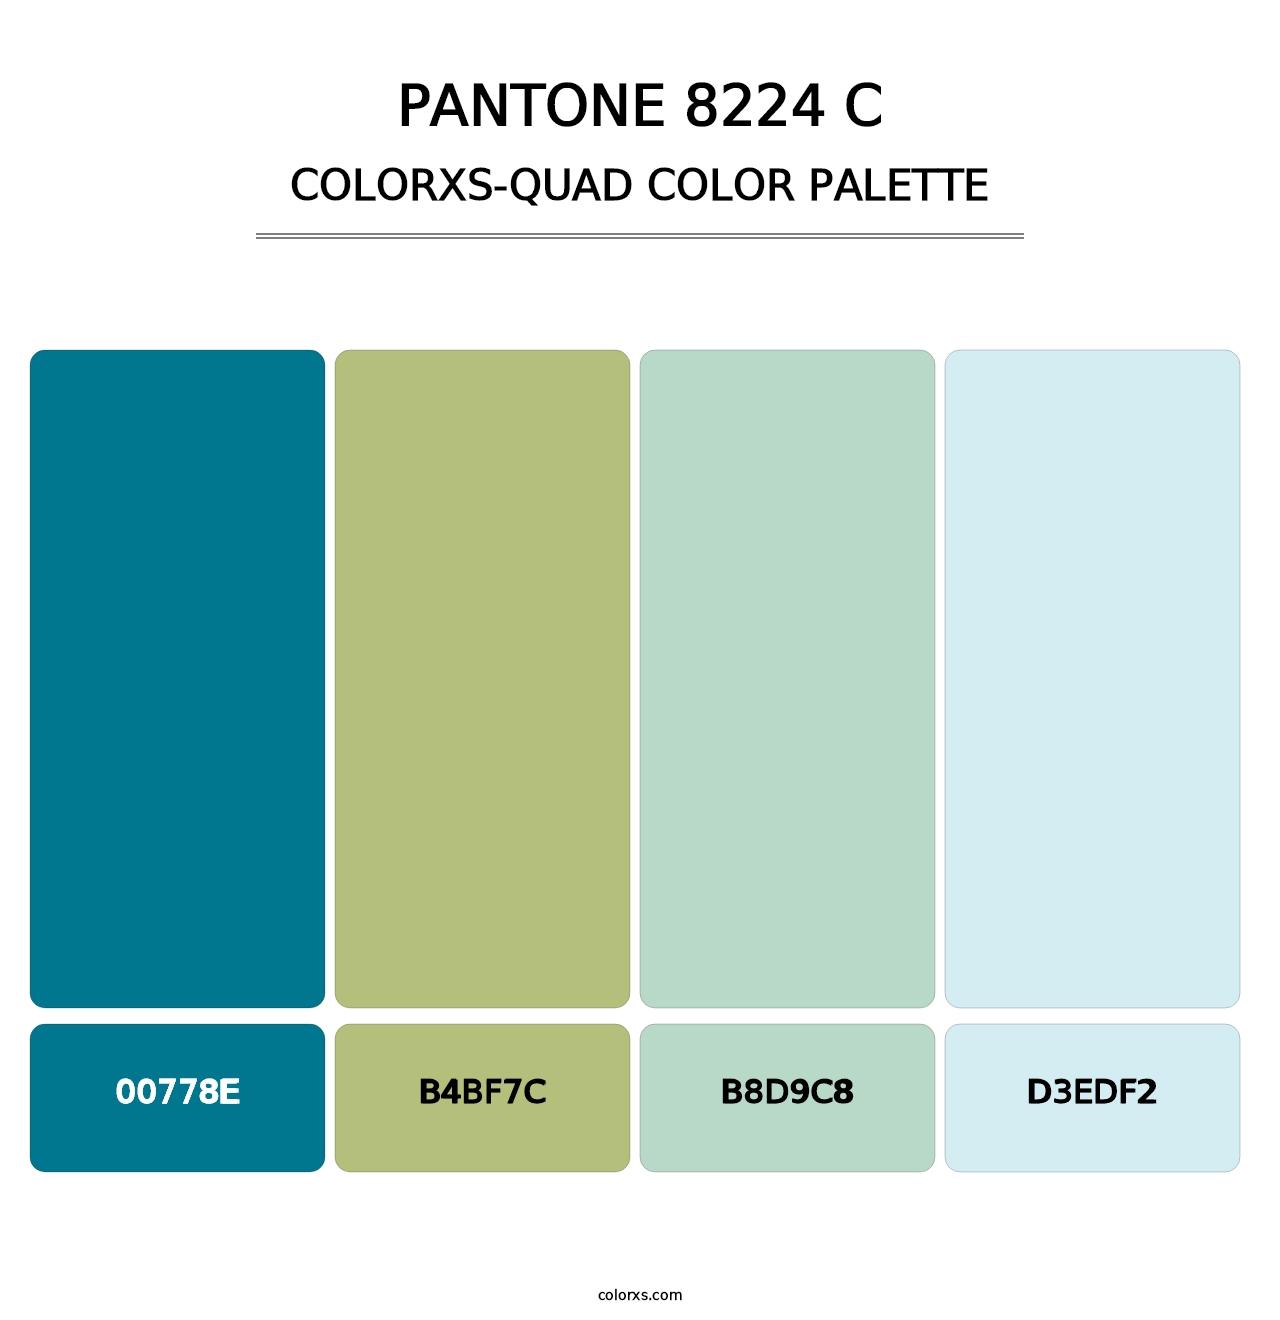 PANTONE 8224 C - Colorxs Quad Palette